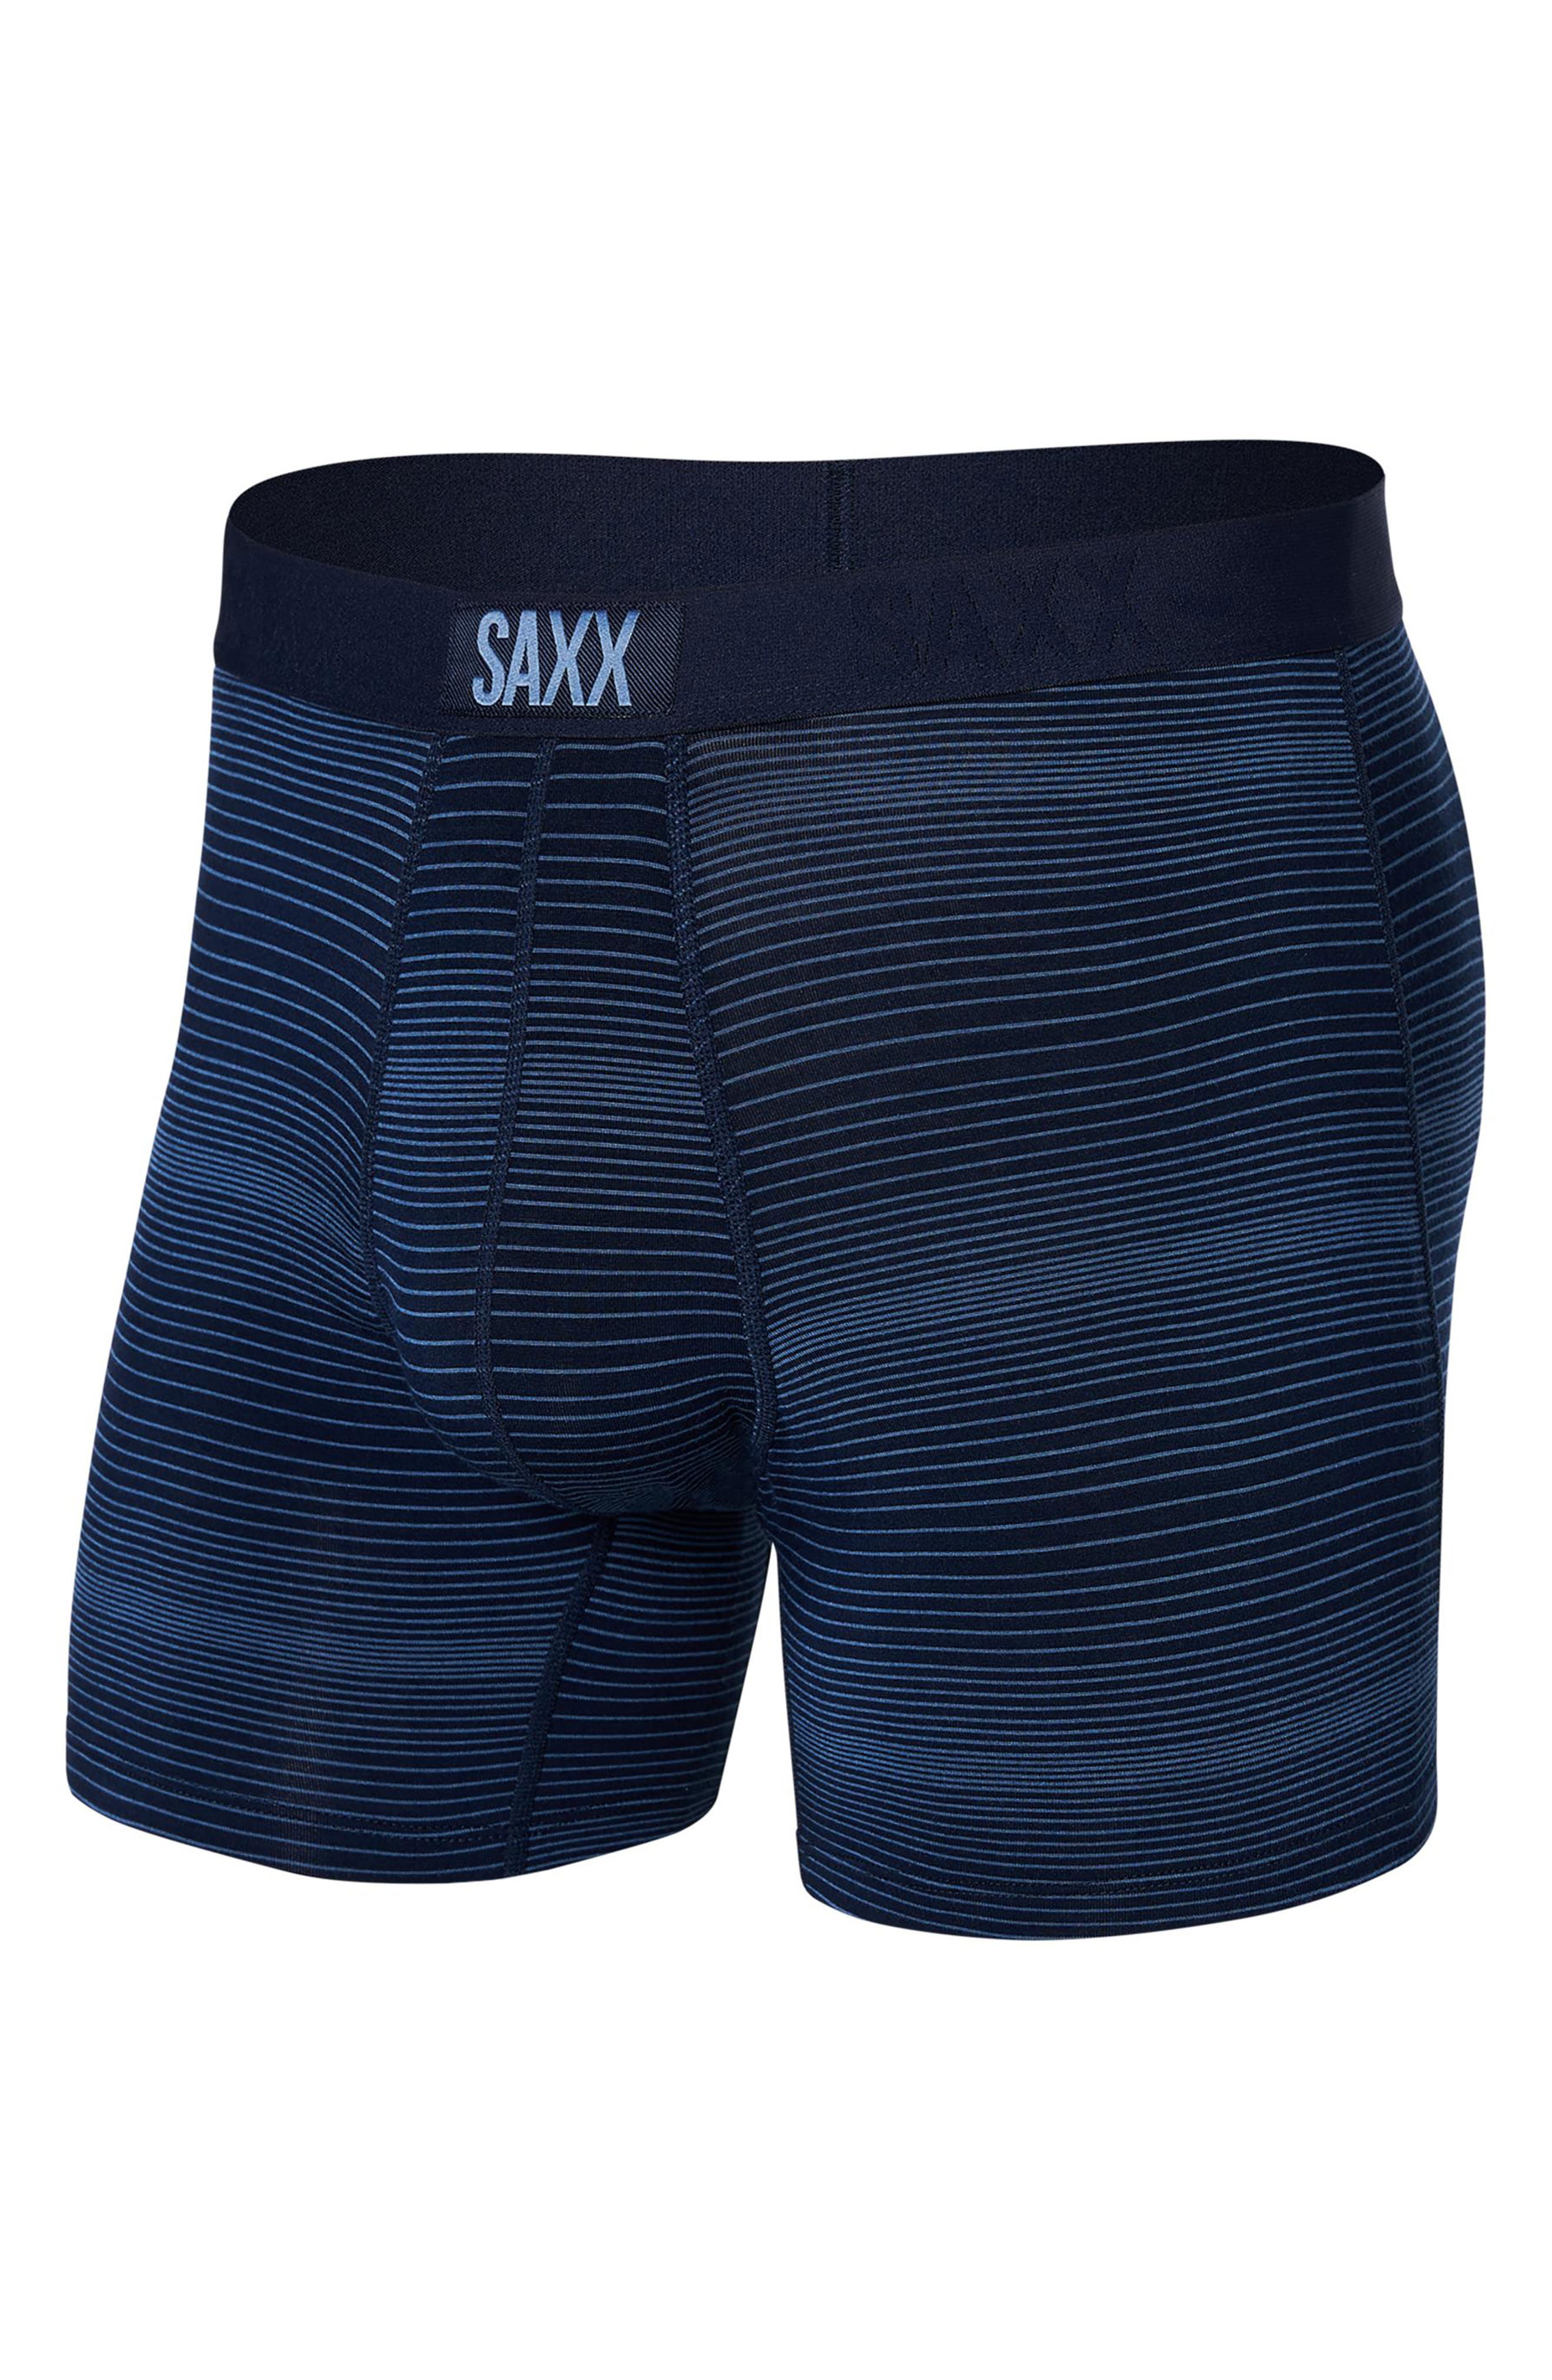 Saxx Men's Daytripper 3-Pk. Slim-Fit Boxer Briefs